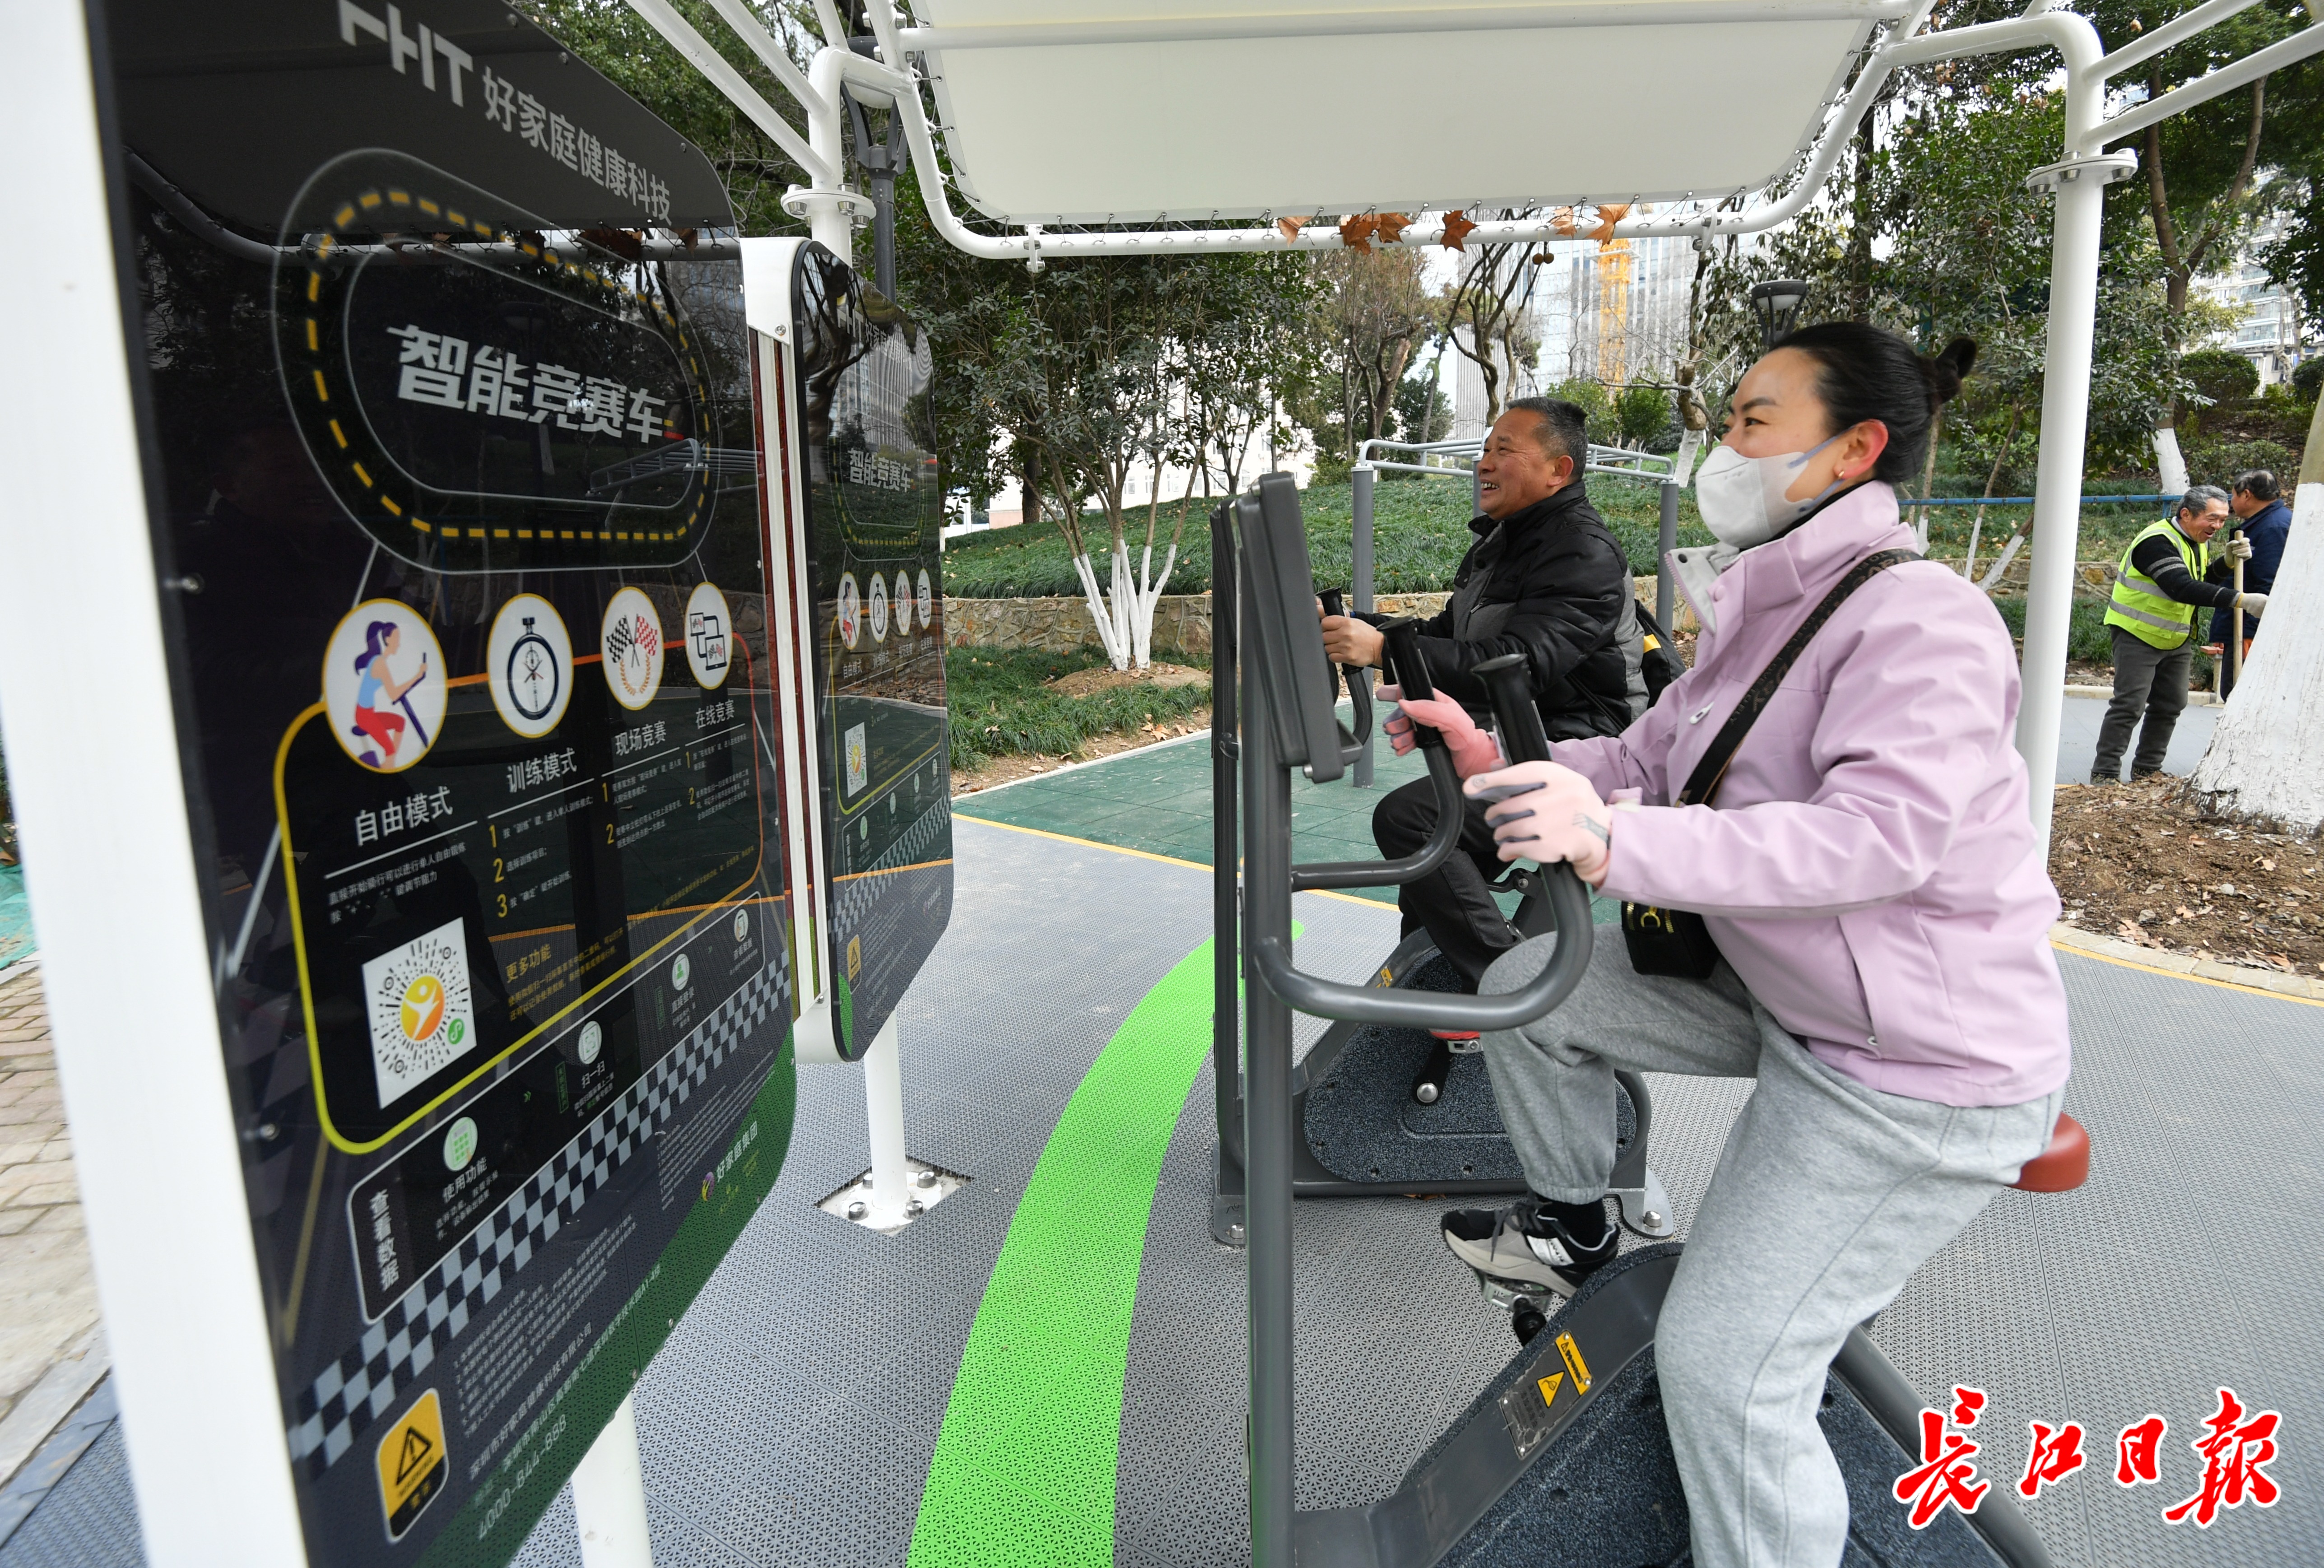 中山公园上新室外智能健身房好多人去玩